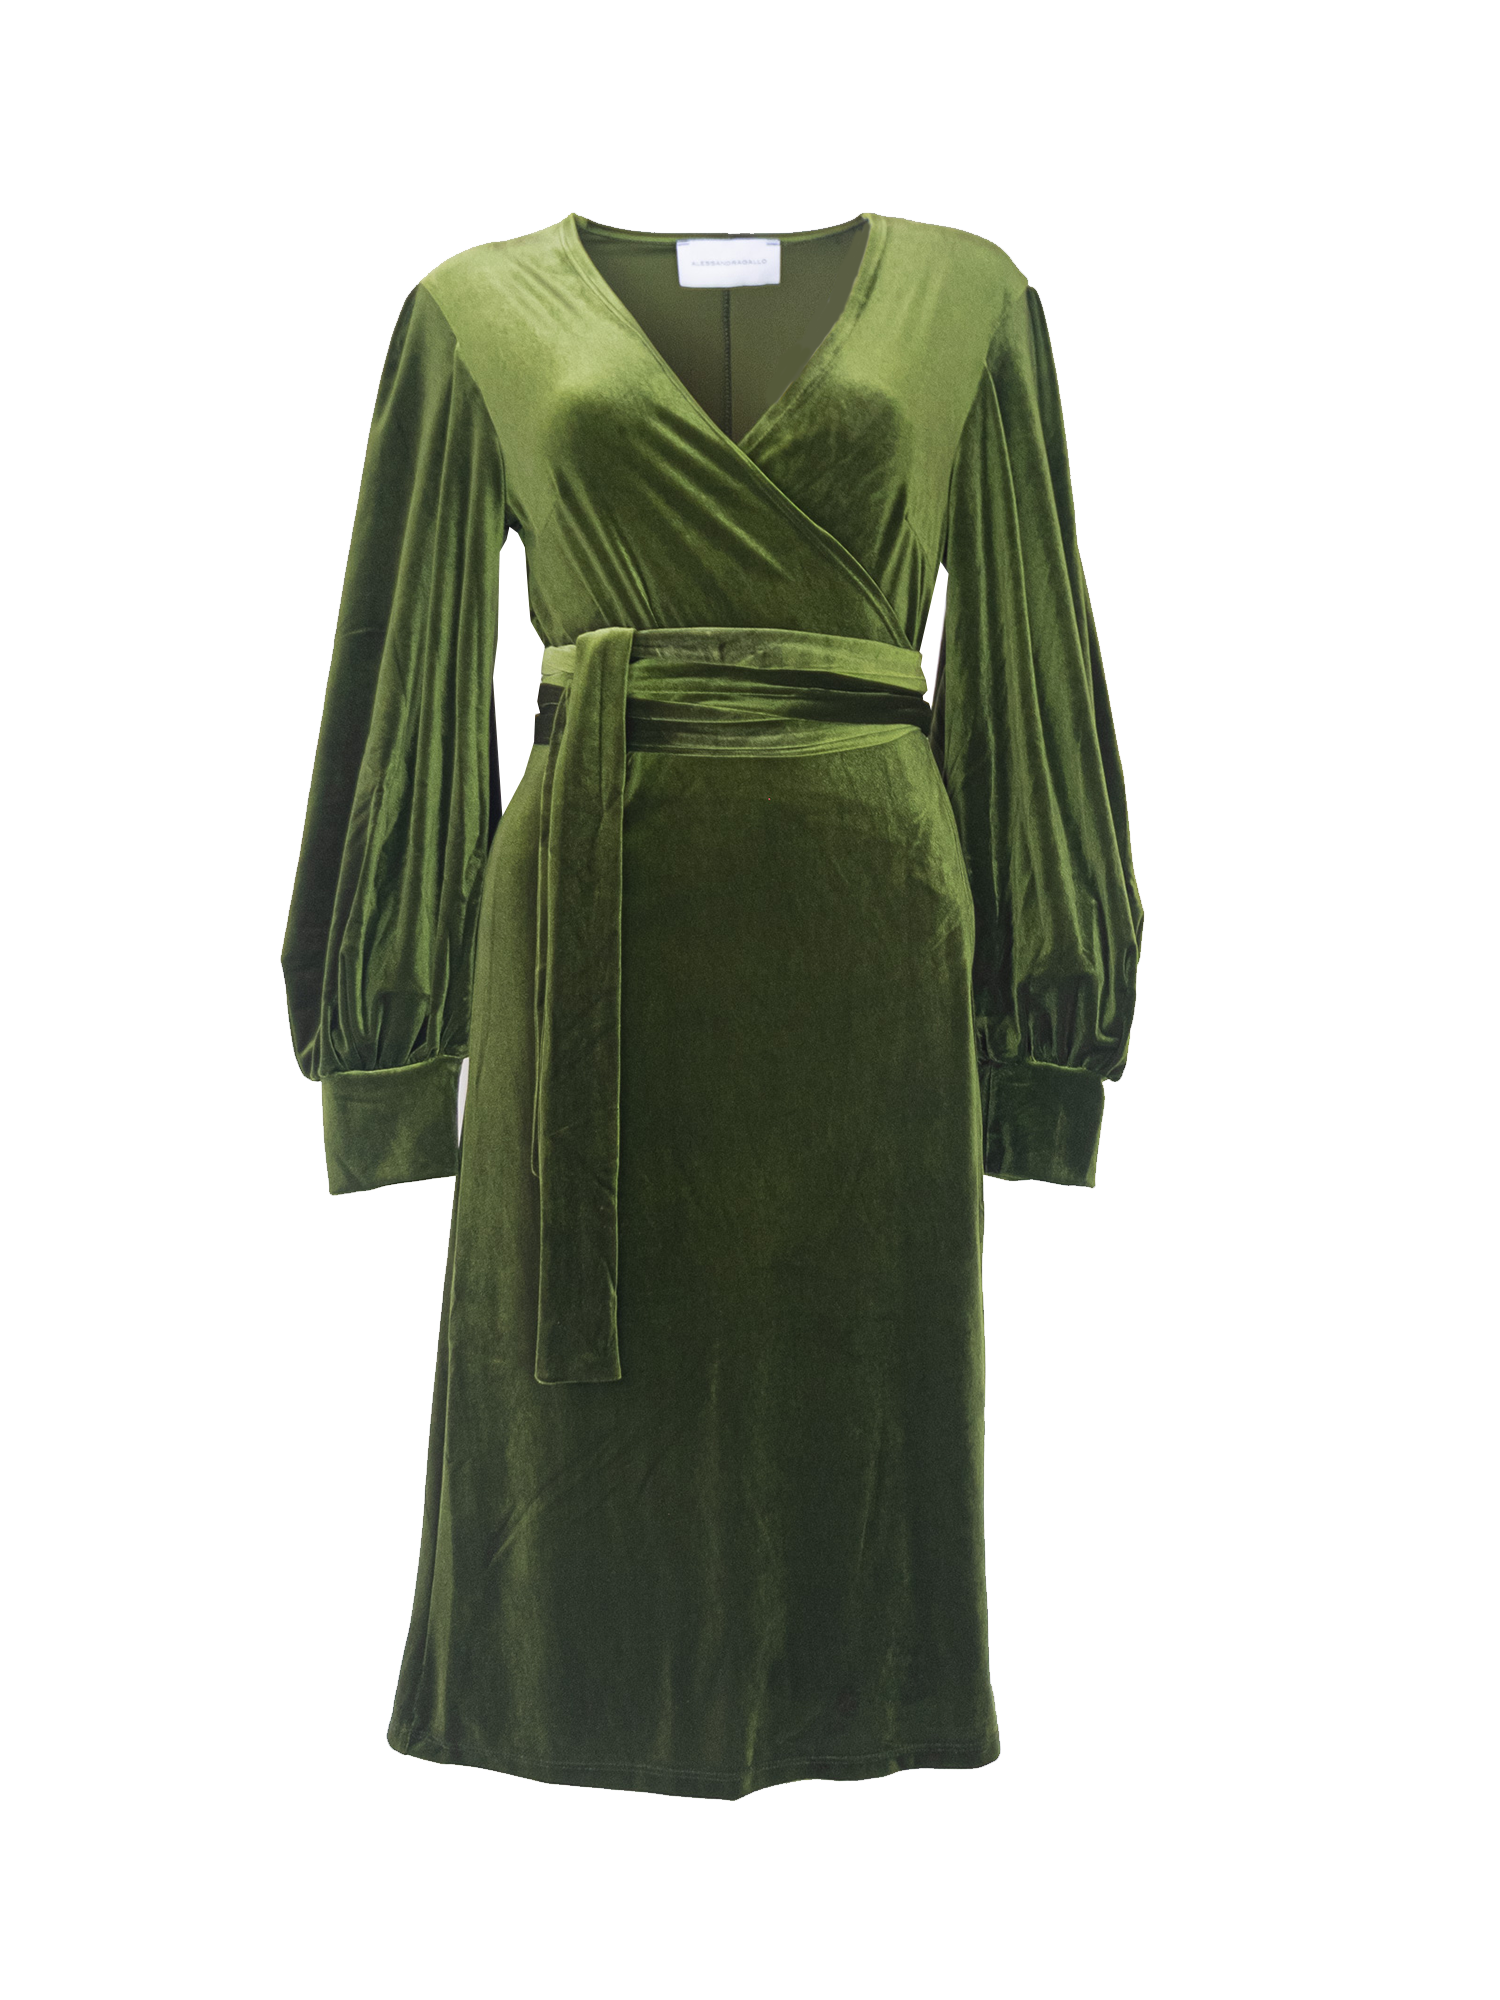 FIAMMA - wrap dress with sash in green chenille